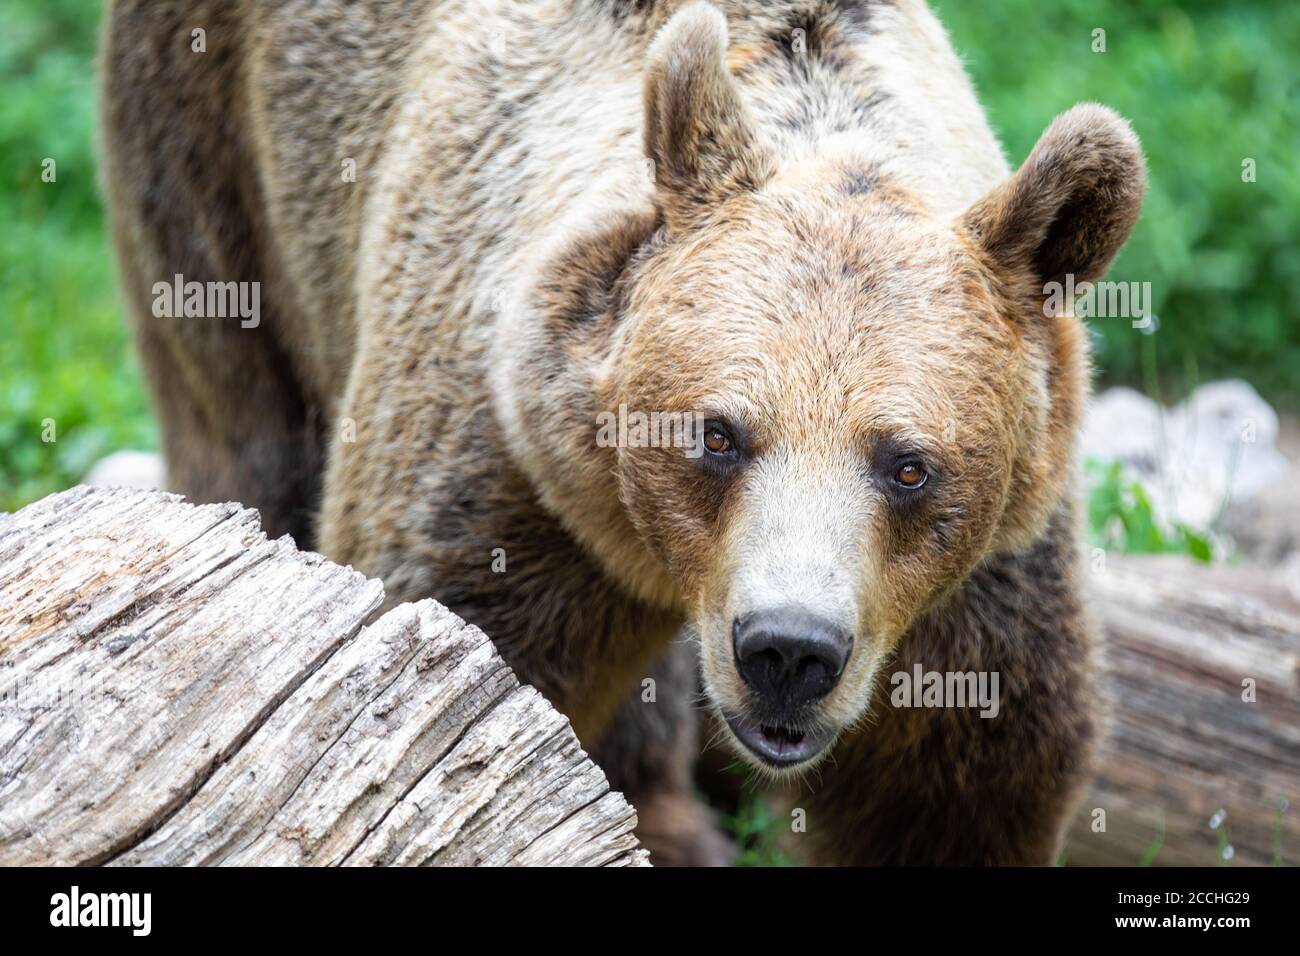 Gros plan d'un ours brun adulte debout quatre pieds et regarder la caméra Banque D'Images